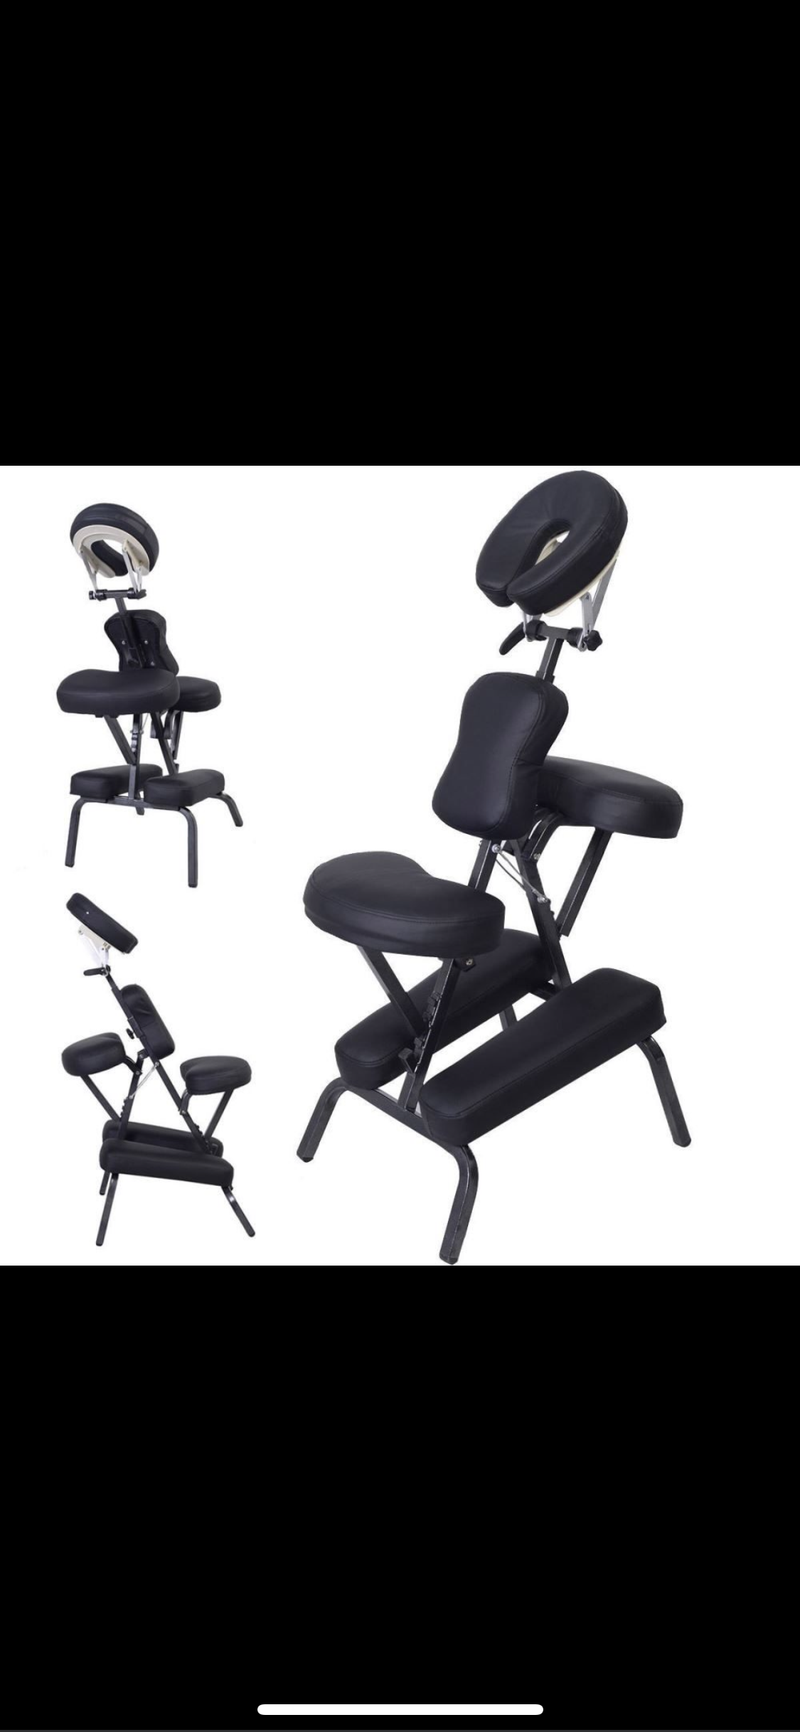 Portable massage chair - JustRight deals New Zealand 